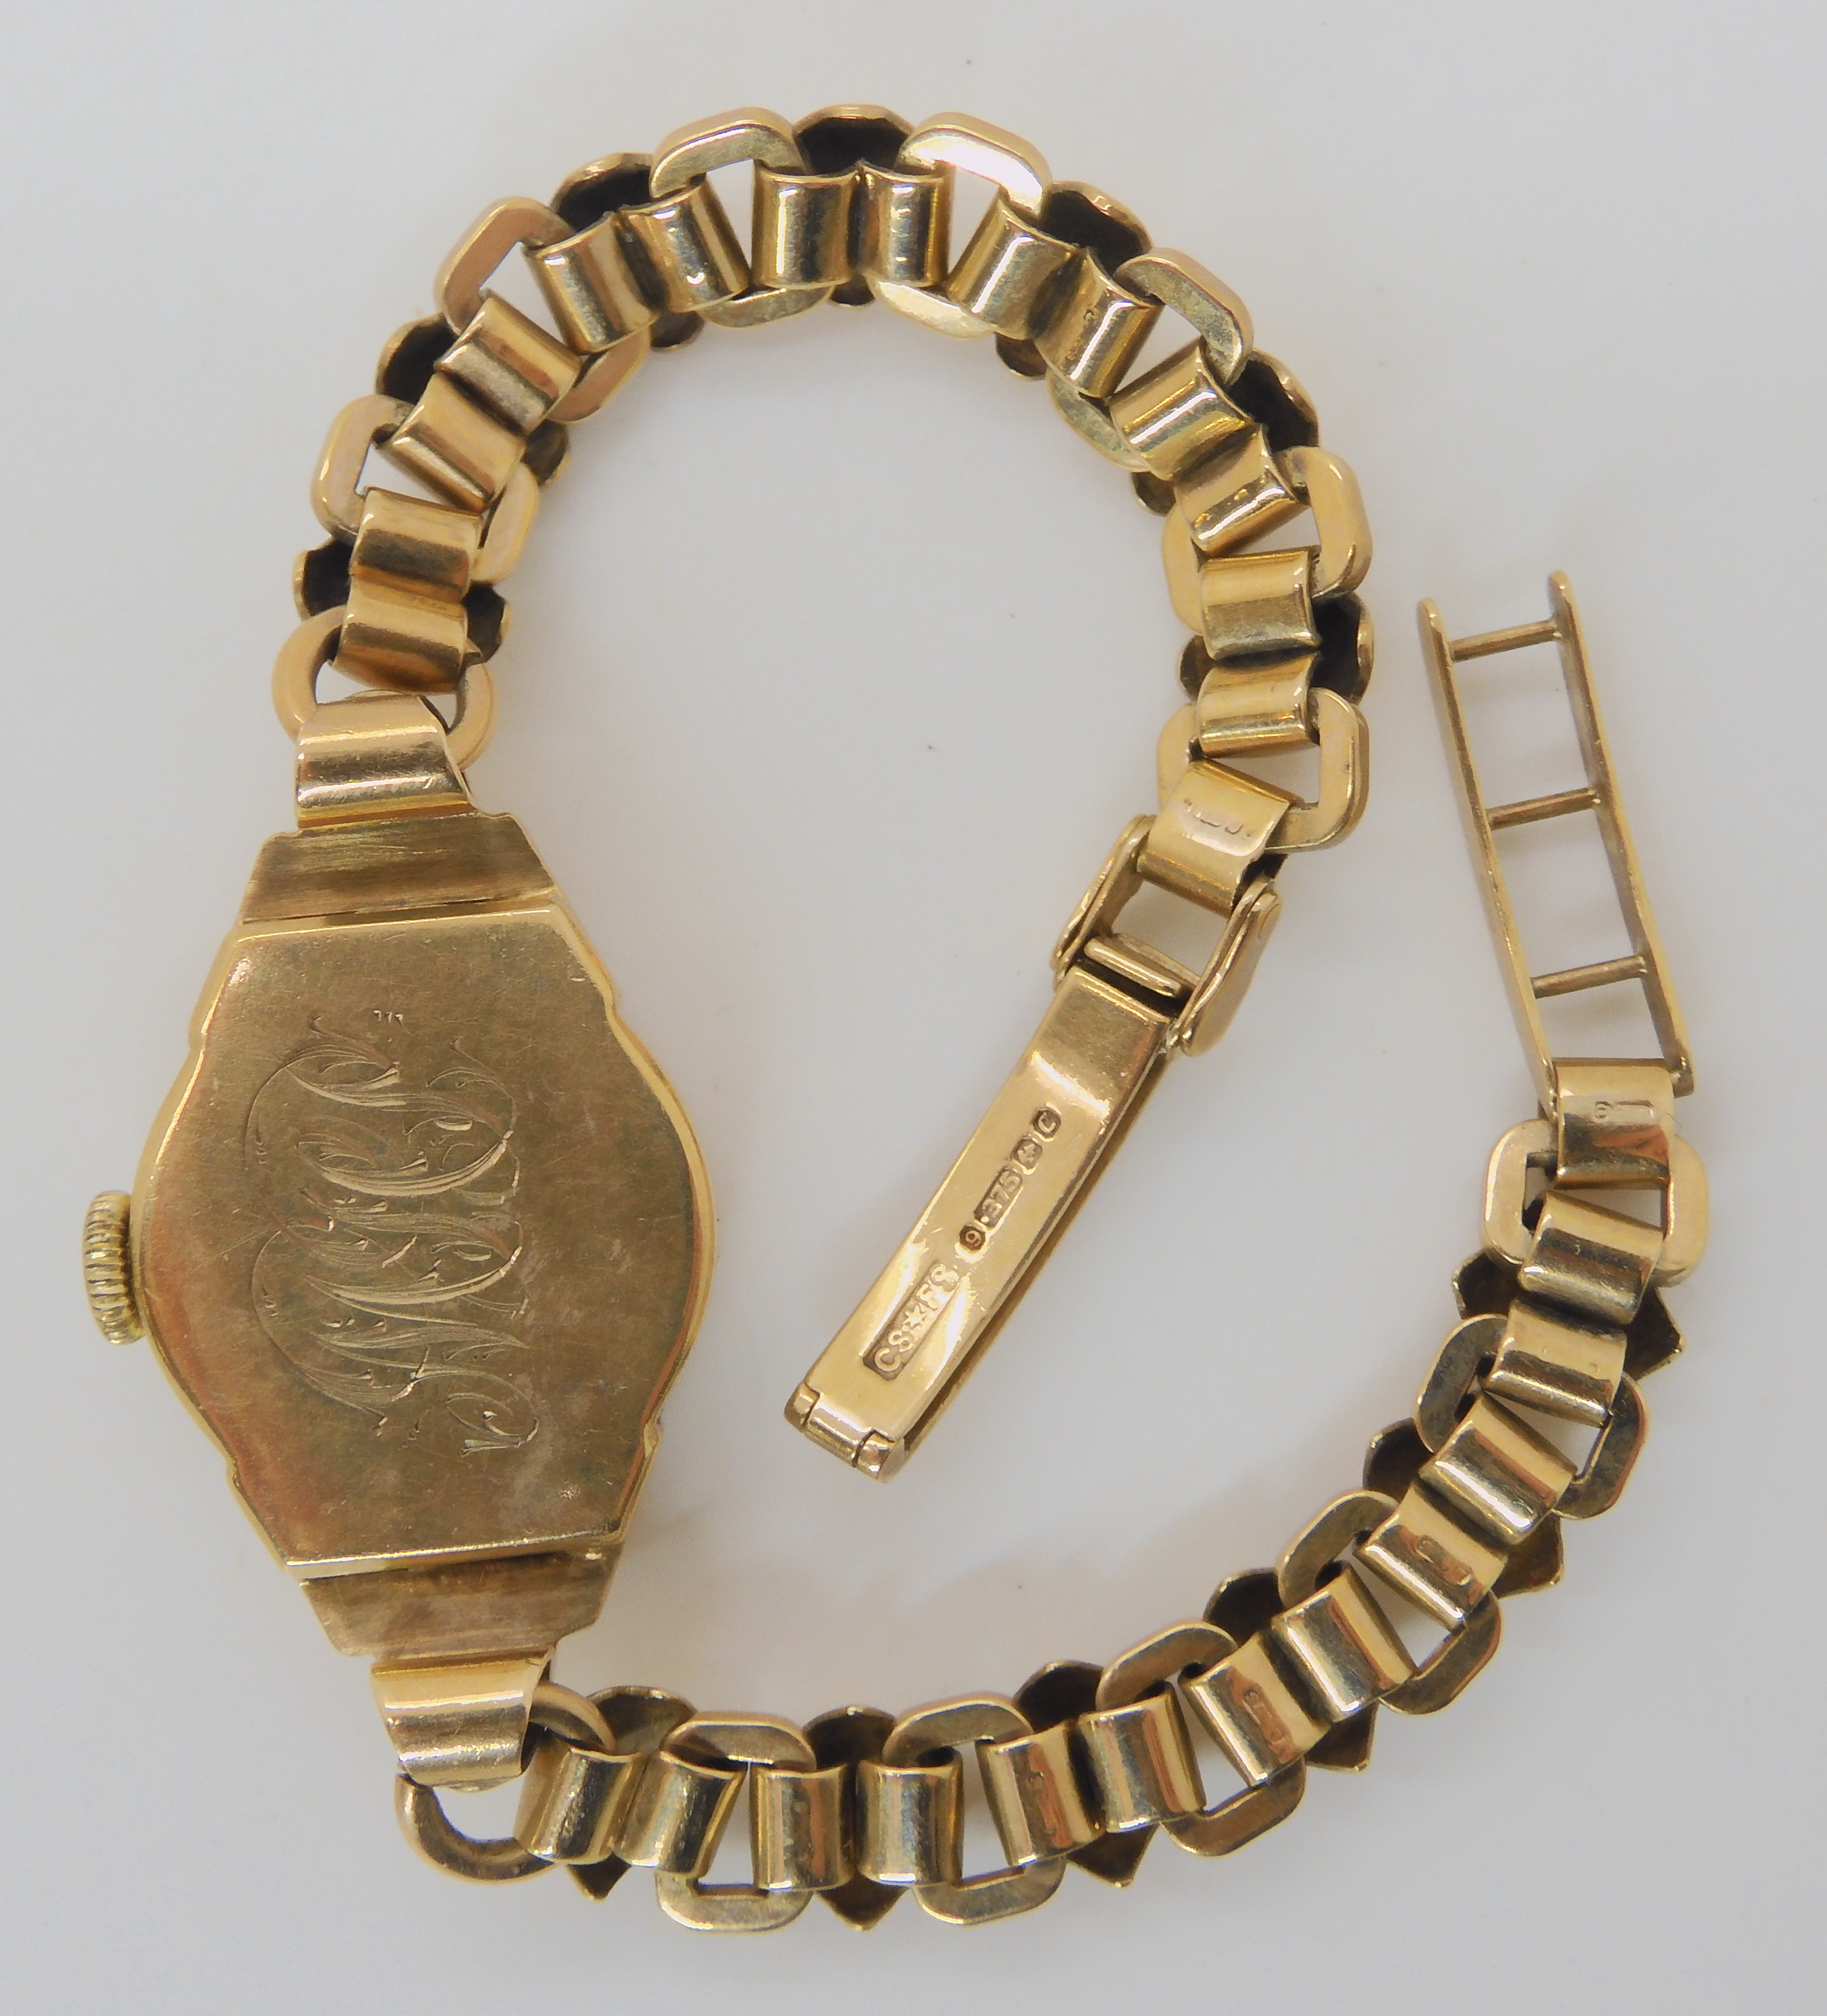 A 9CT GOLD LADIES LONGINES WATCH with decorative strap length 18.5cm, case dimensions 3.3cm x 1.8cm, - Bild 3 aus 4